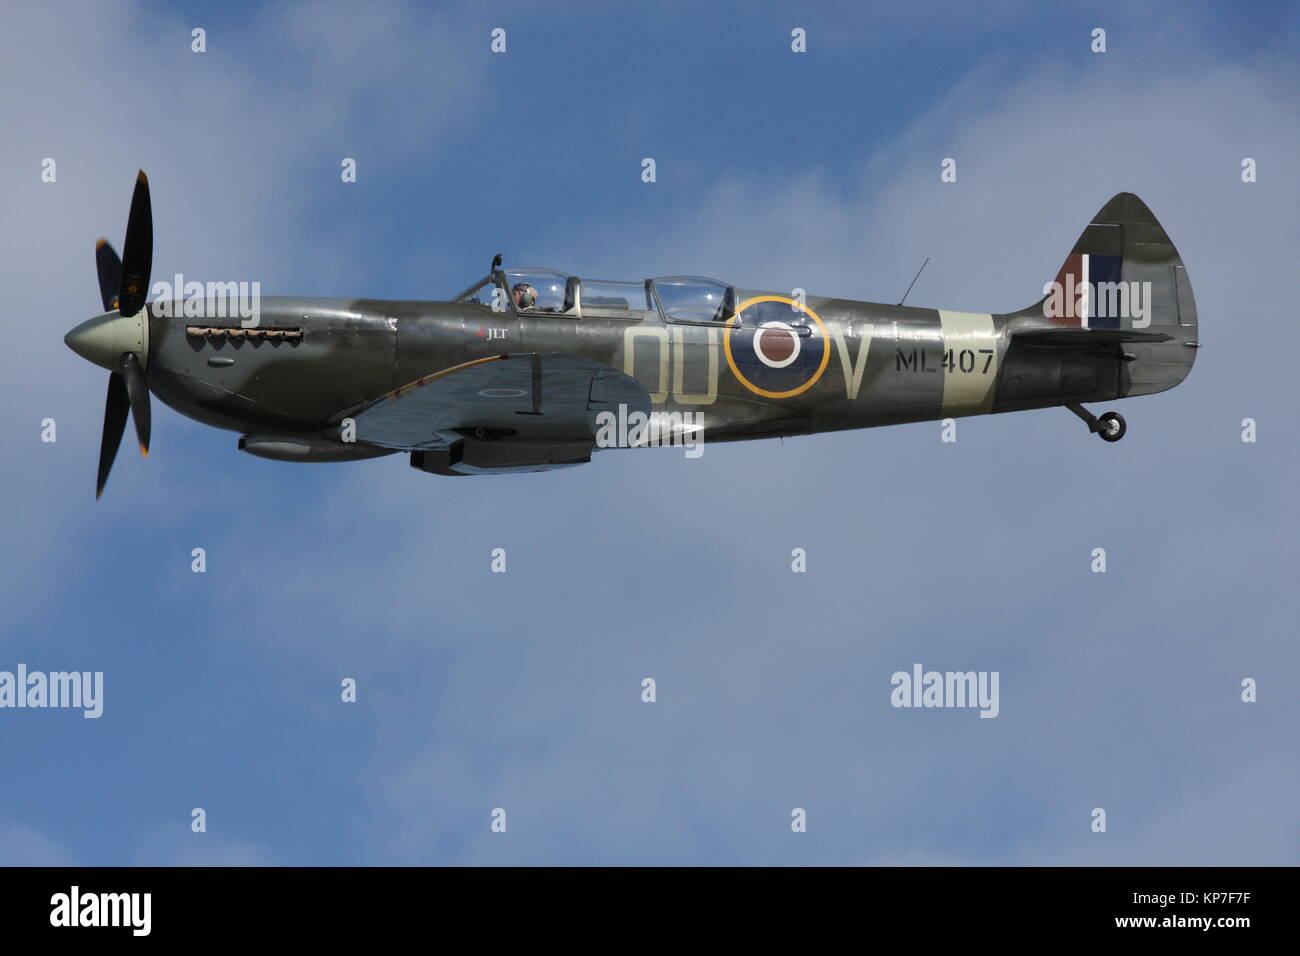 Un Spitfire de la seconde guerre mondiale avion de chasse, qui a défendu la Grande-Bretagne Banque D'Images